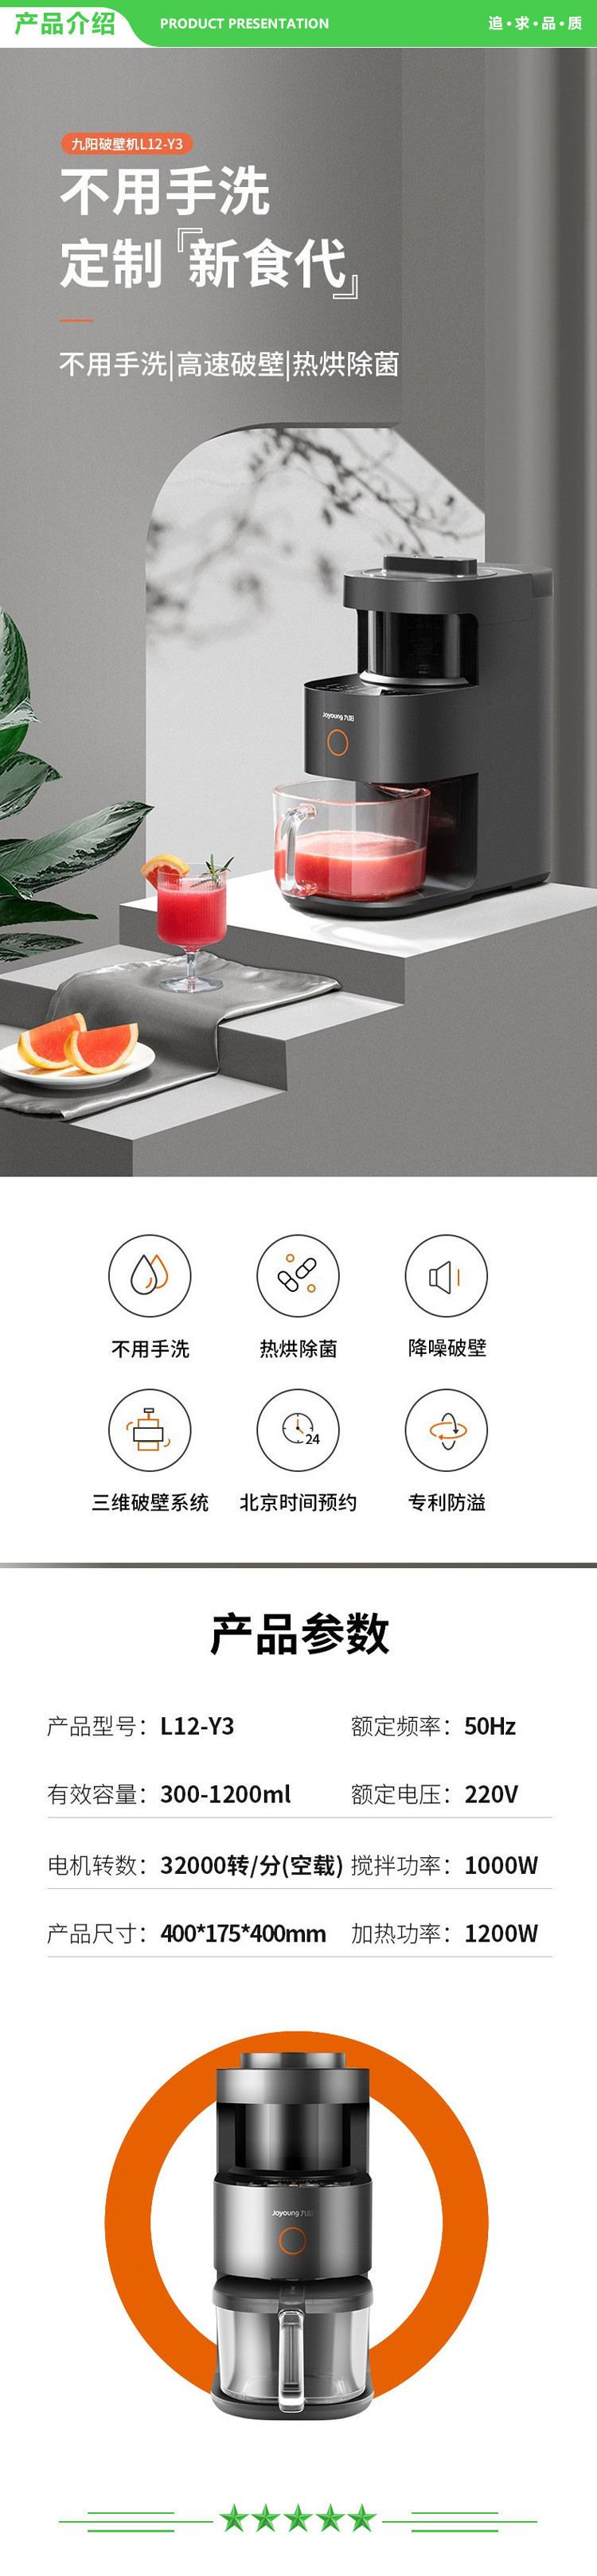 九阳 Joyoung L12-Y3 破壁机 全自动家用料理豆浆磨粉碎冰机预约热烘除菌 1.2L.jpg